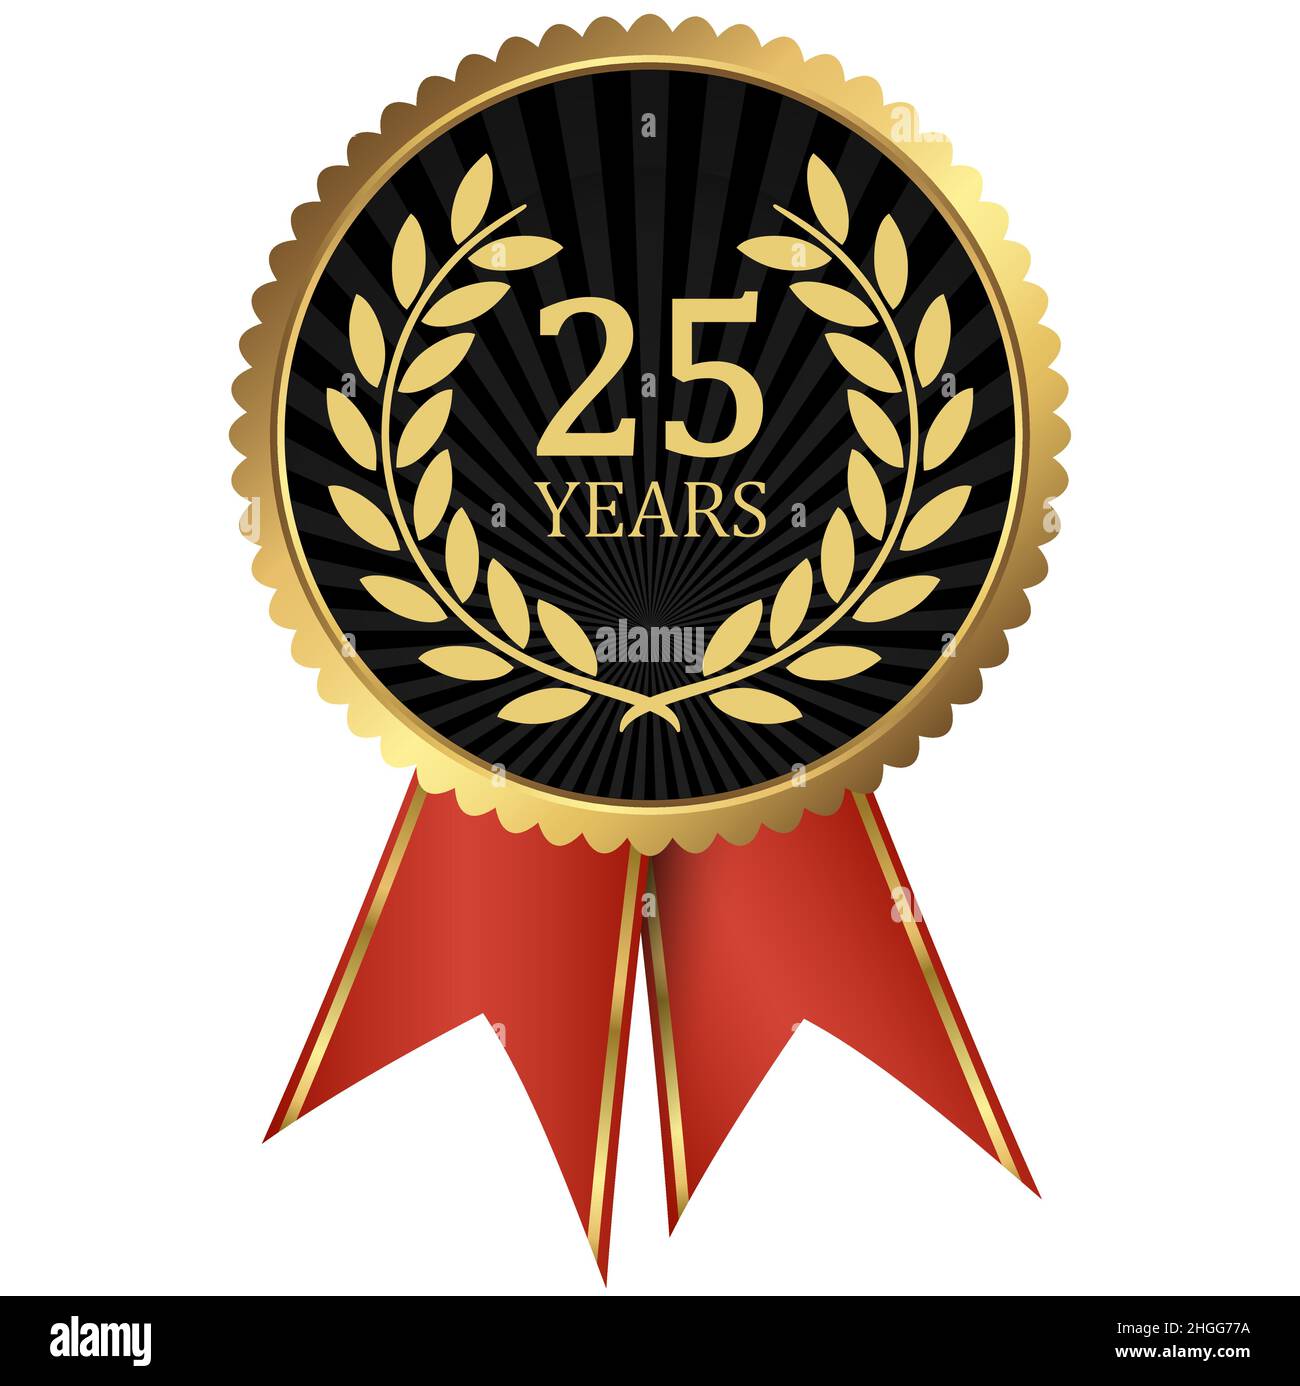 fichier vectoriel eps avec médaillon d'or avec couronne de laurier pour le succès ou jubilé ferme et texte 25 ans Illustration de Vecteur